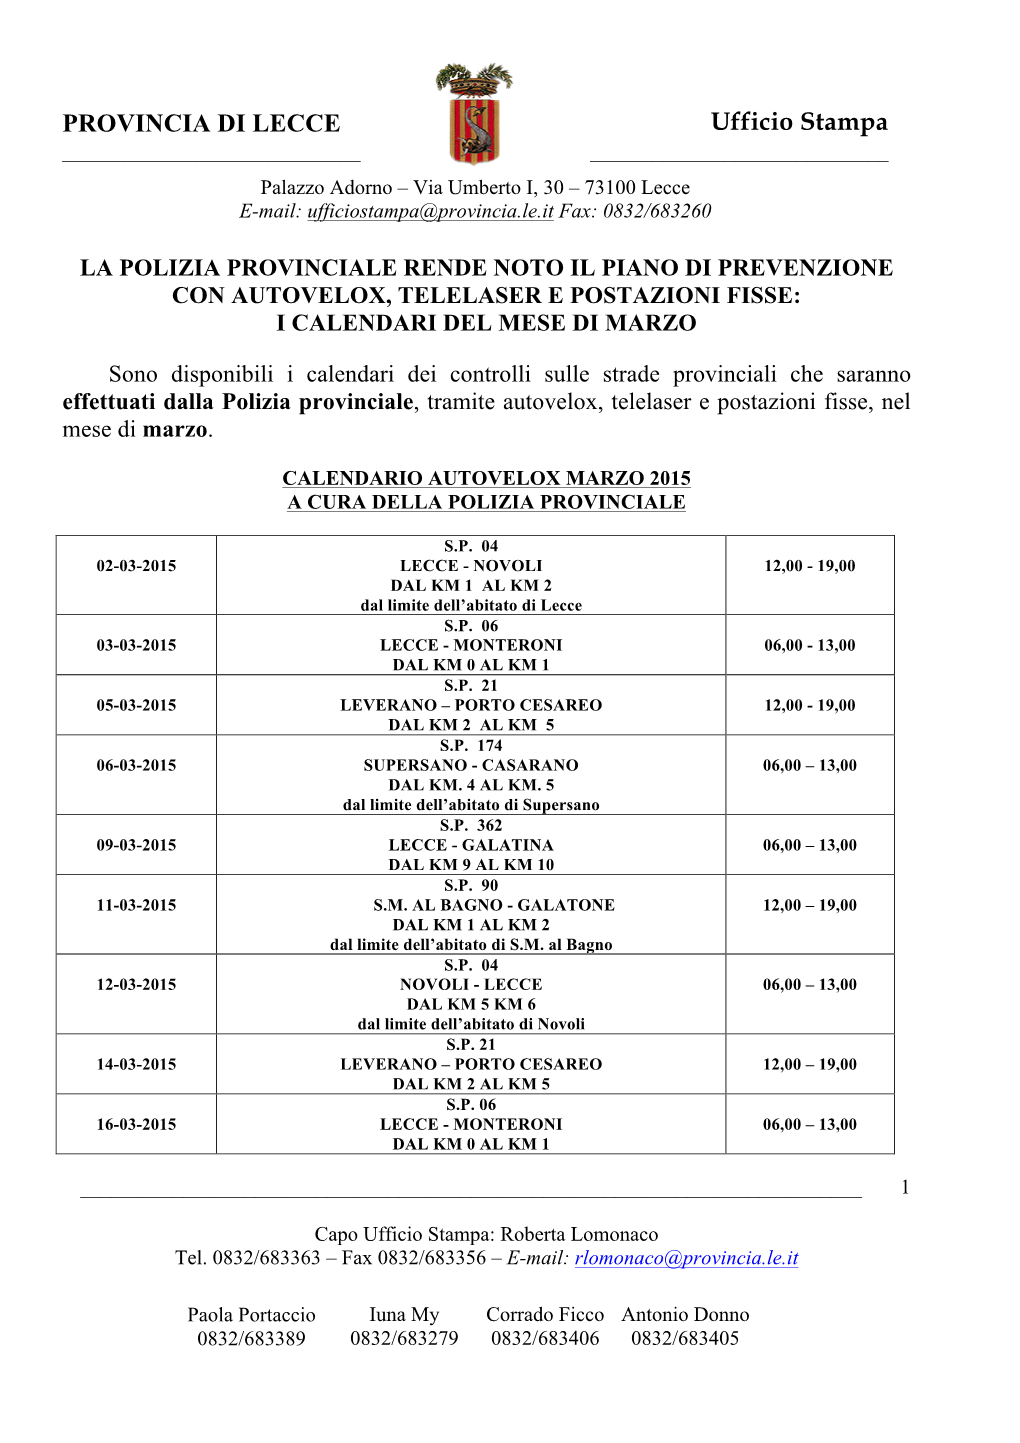 Calendario Autovelox Marzo 2015 a Cura Della Polizia Provinciale